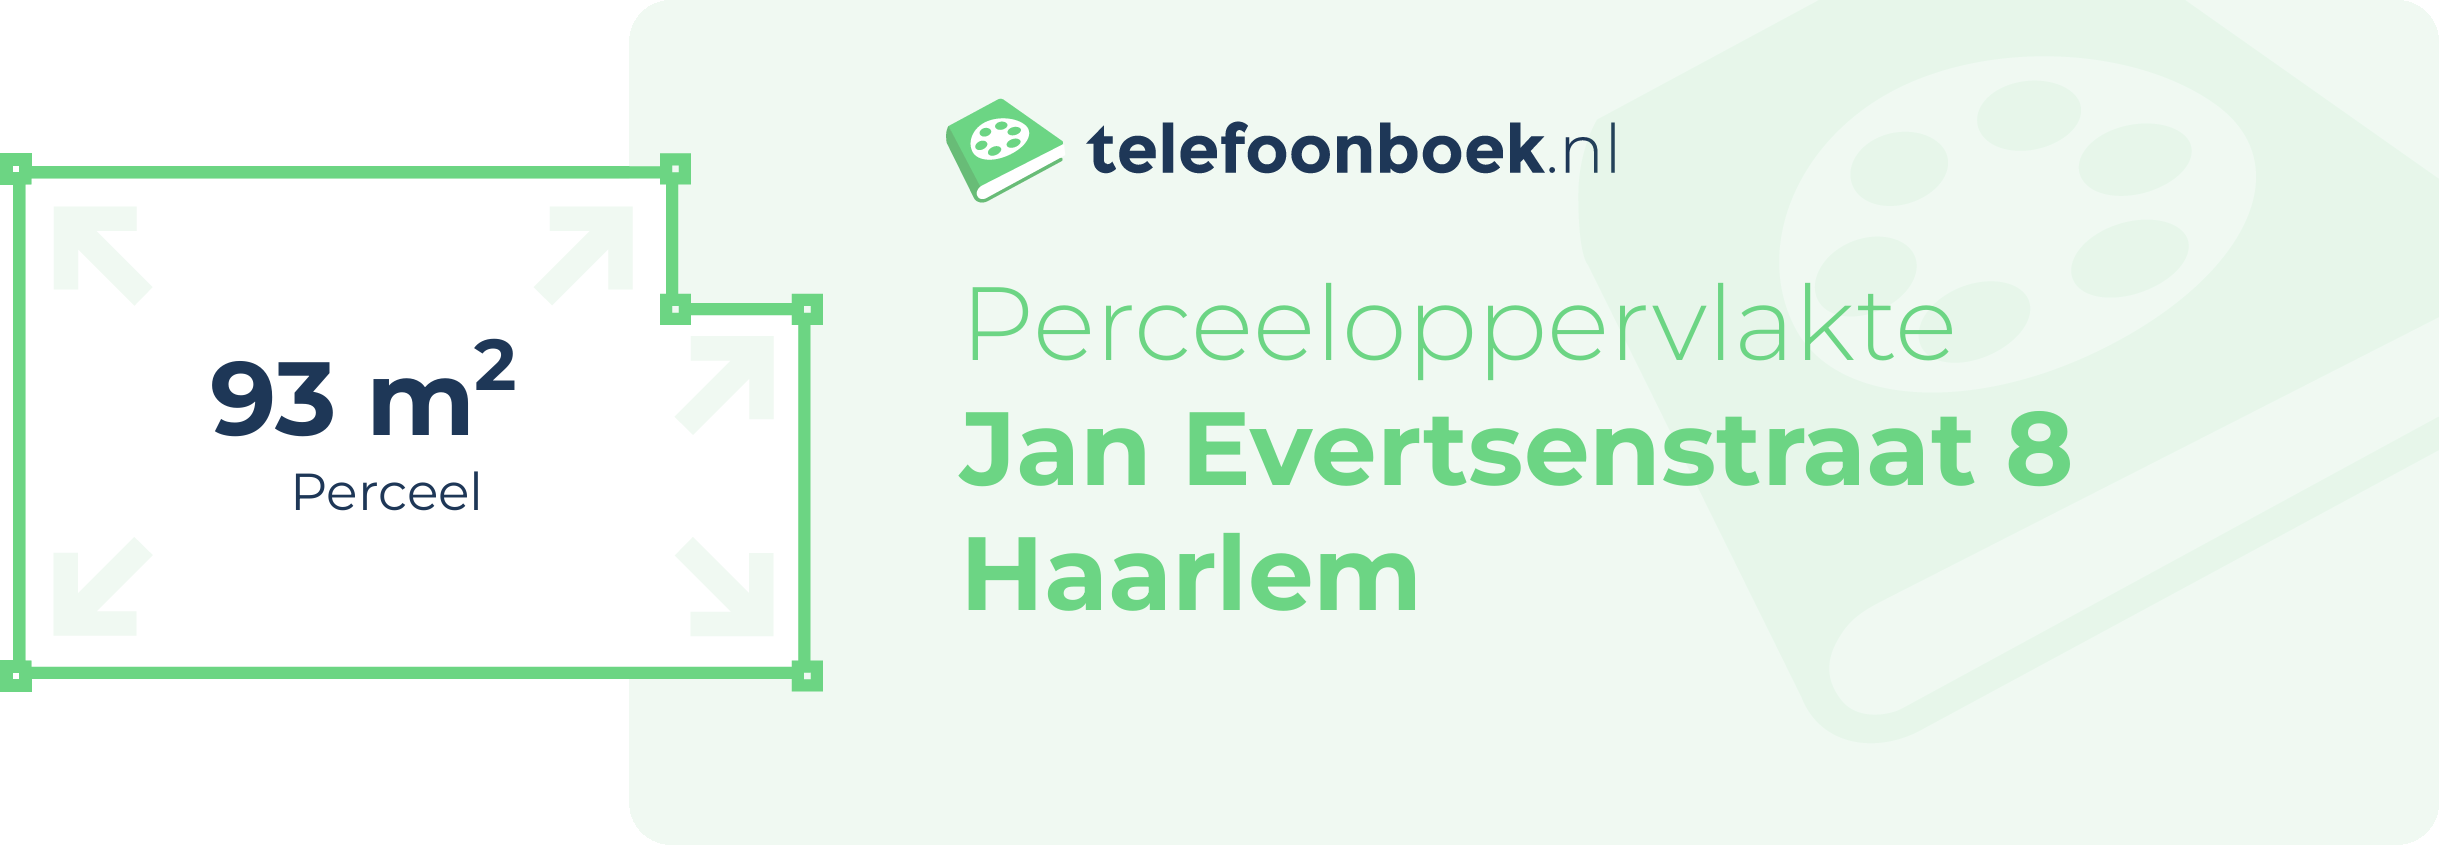 Perceeloppervlakte Jan Evertsenstraat 8 Haarlem